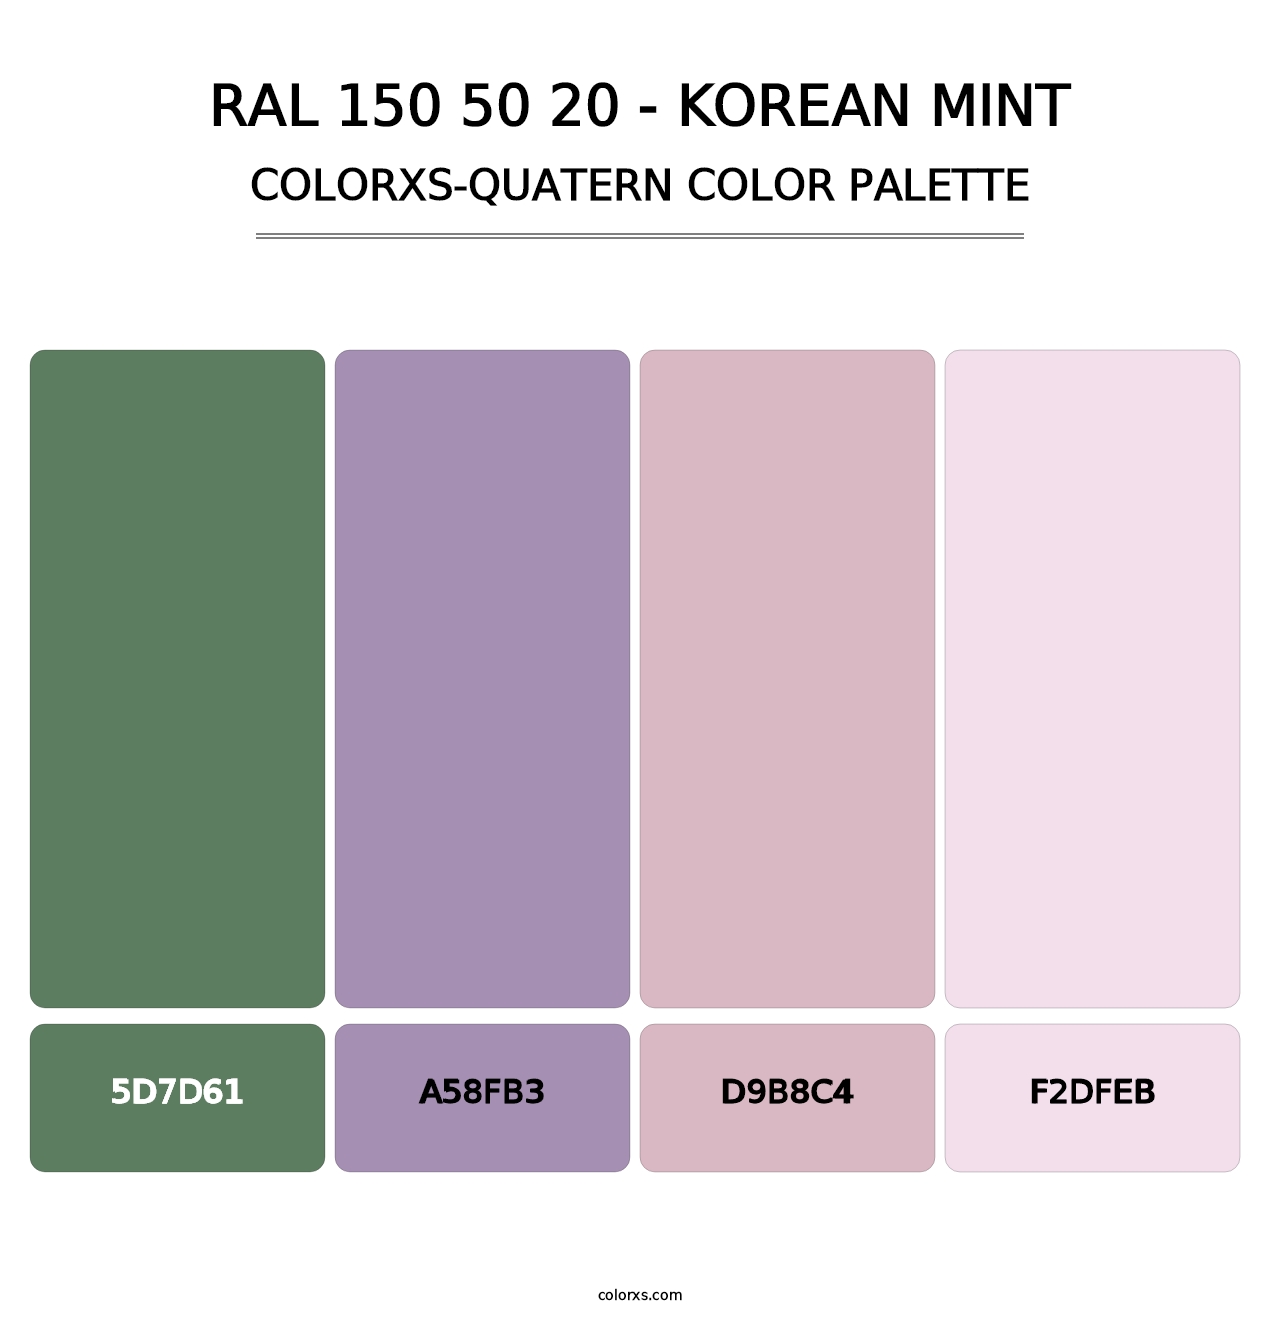 RAL 150 50 20 - Korean Mint - Colorxs Quatern Palette